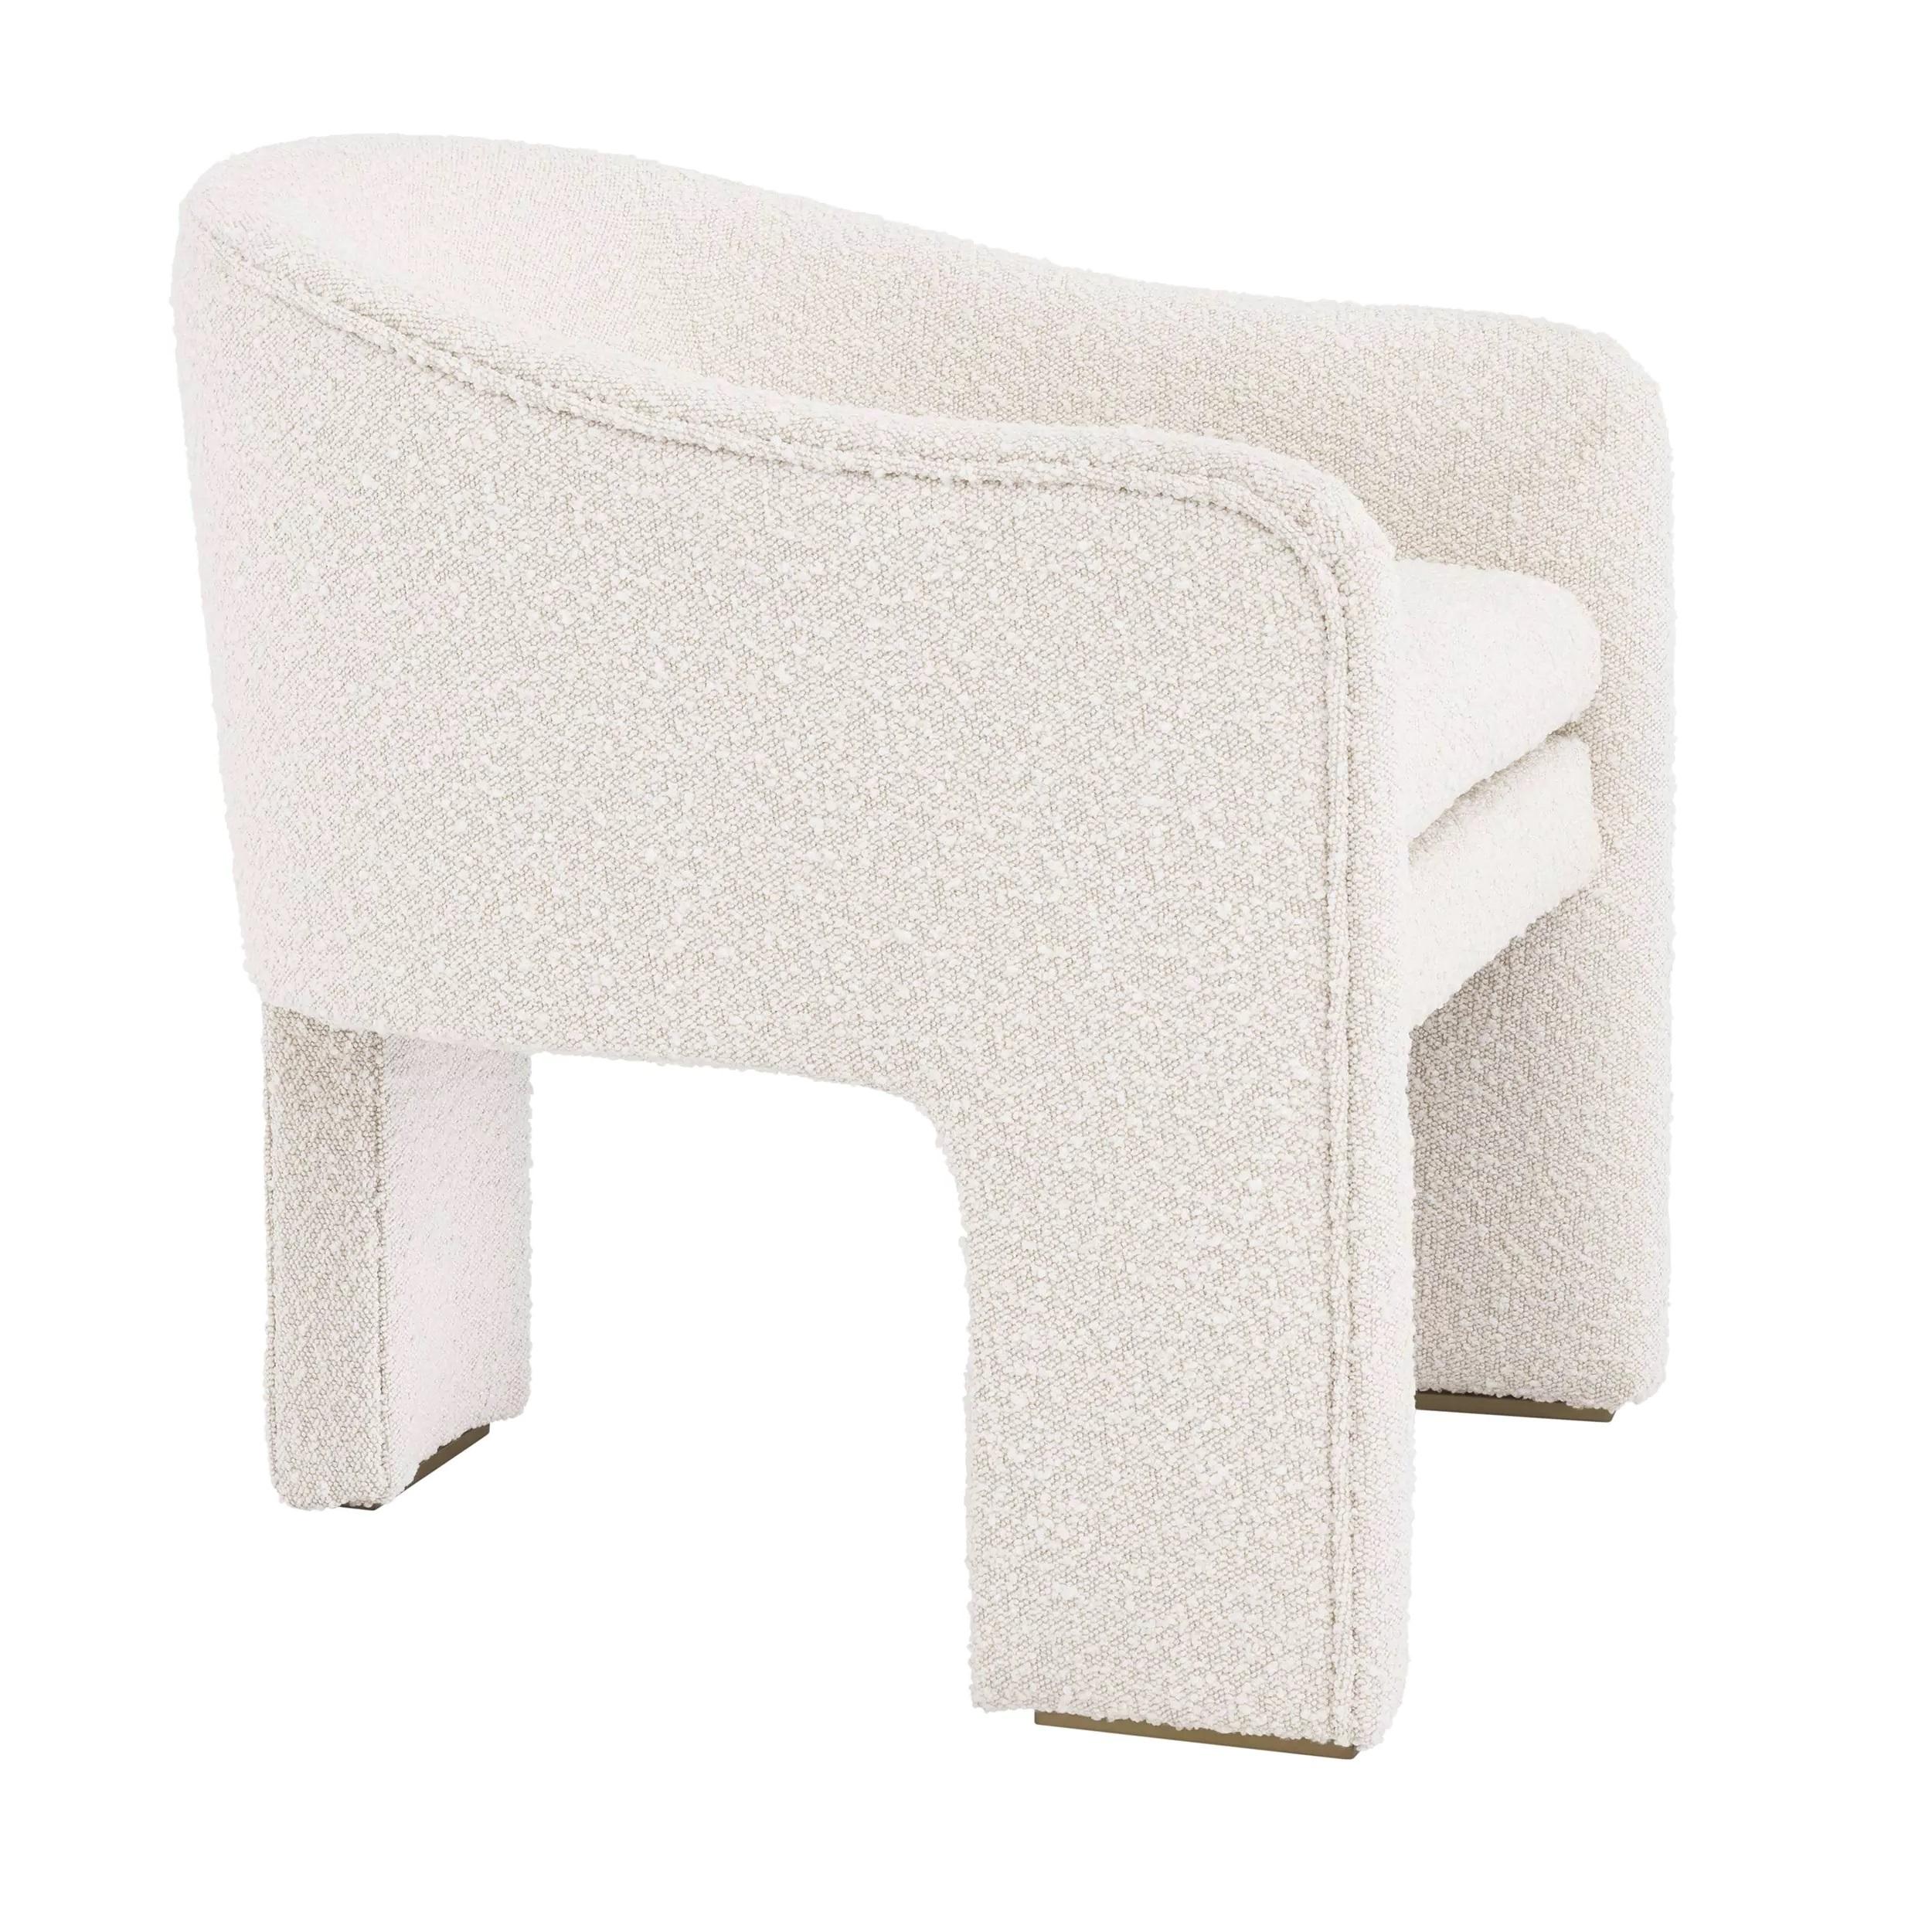 Einladend geformter Sessel im italienischen Design der 1980er Jahre, ganz in beigem Bouclé-Stoff und mit Füßen aus Messing.